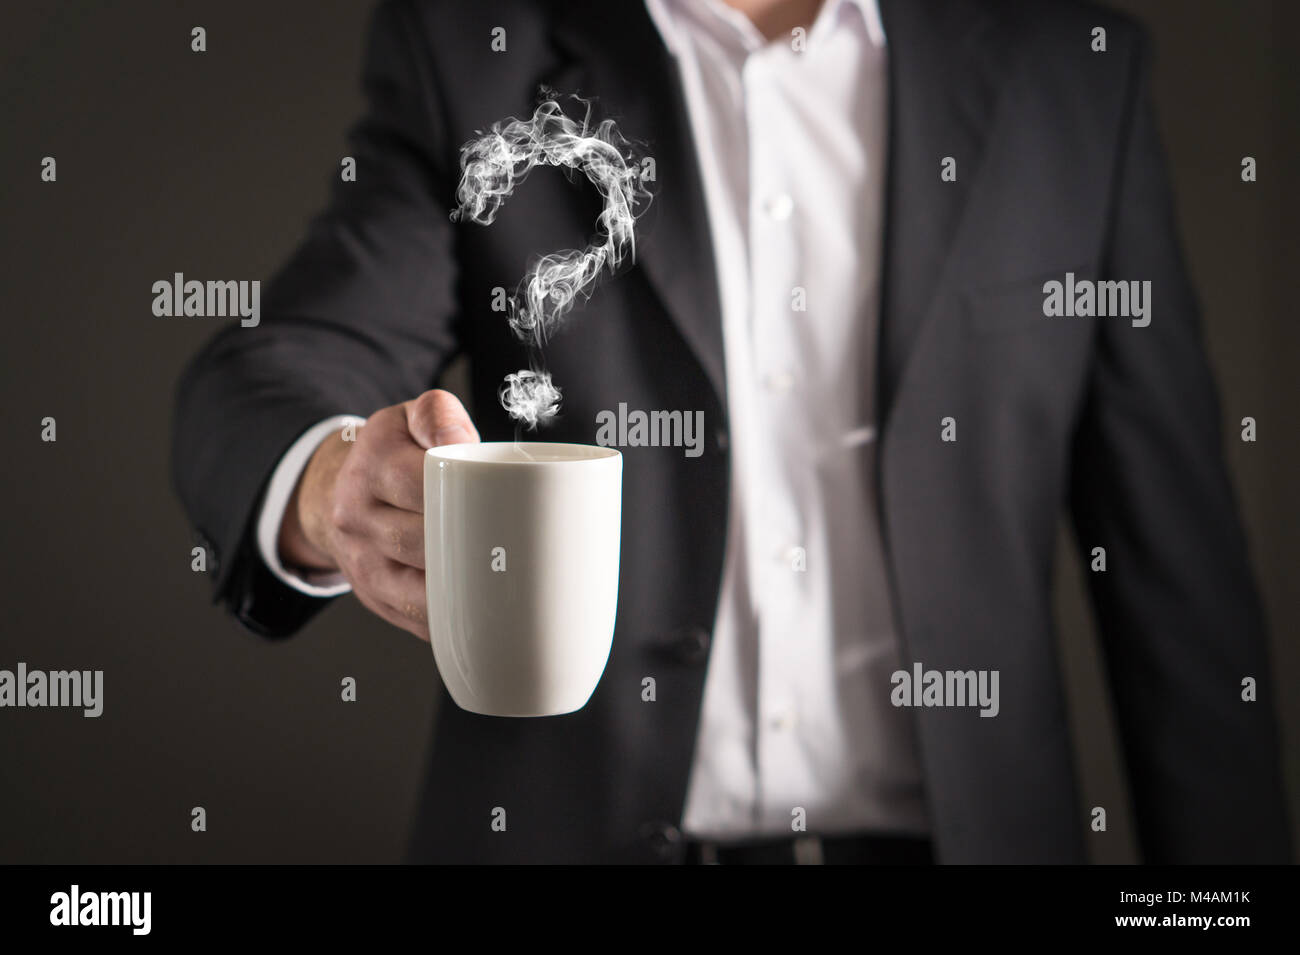 Fragezeichen vom Kaffee Dampf. Rauch bilden ein Symbol. Business Mann im Anzug mit einem heißen Getränk in einem Becher und Tasse Tee. Stockfoto